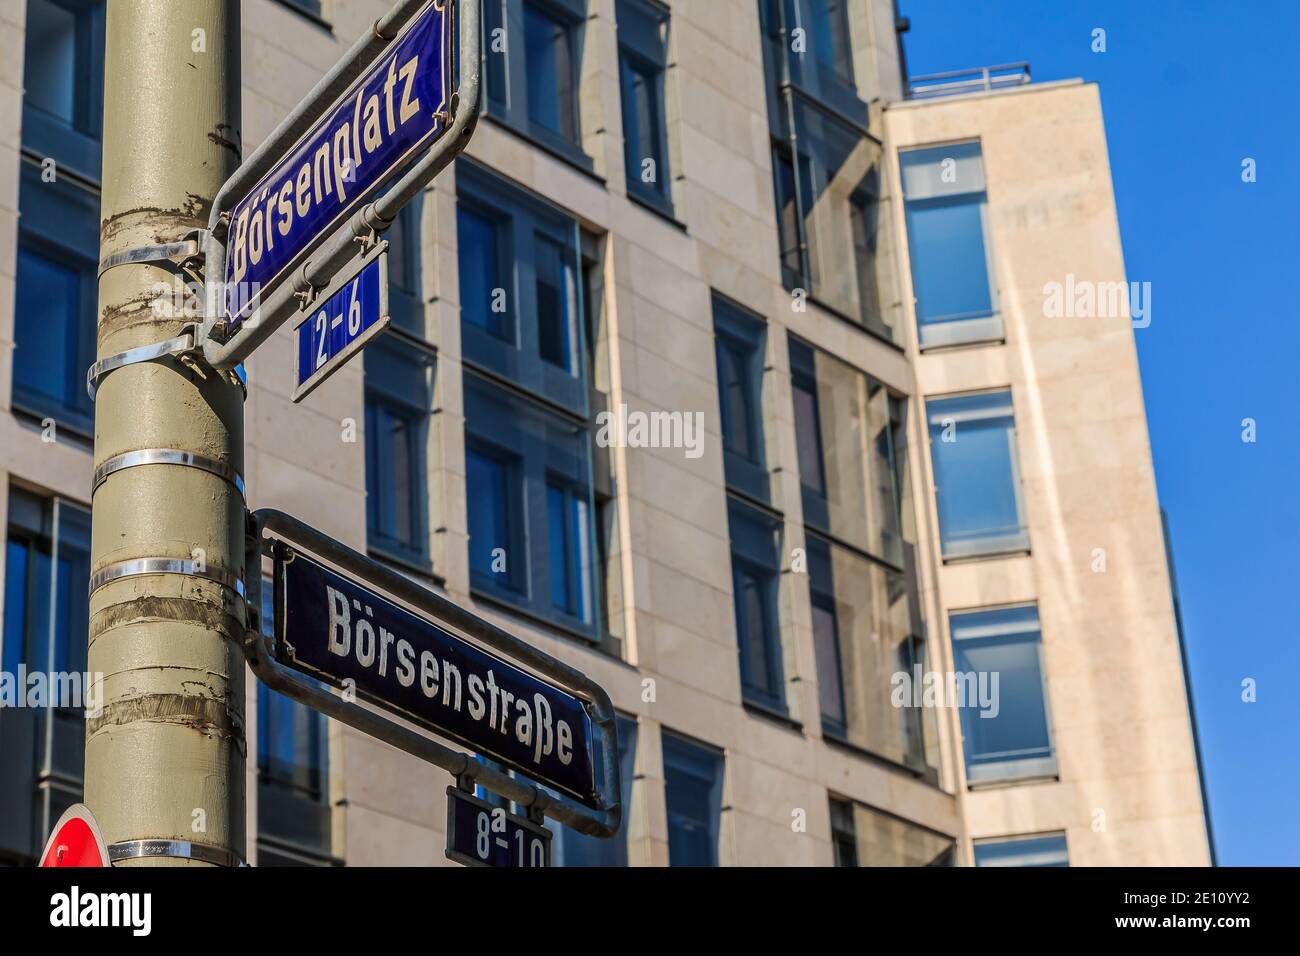 Deux panneaux de rue bleus place de bourse et rue de bourse sur un lampadaire gris avec fixations. Maison avec façade de fenêtre en arrière-plan Banque D'Images